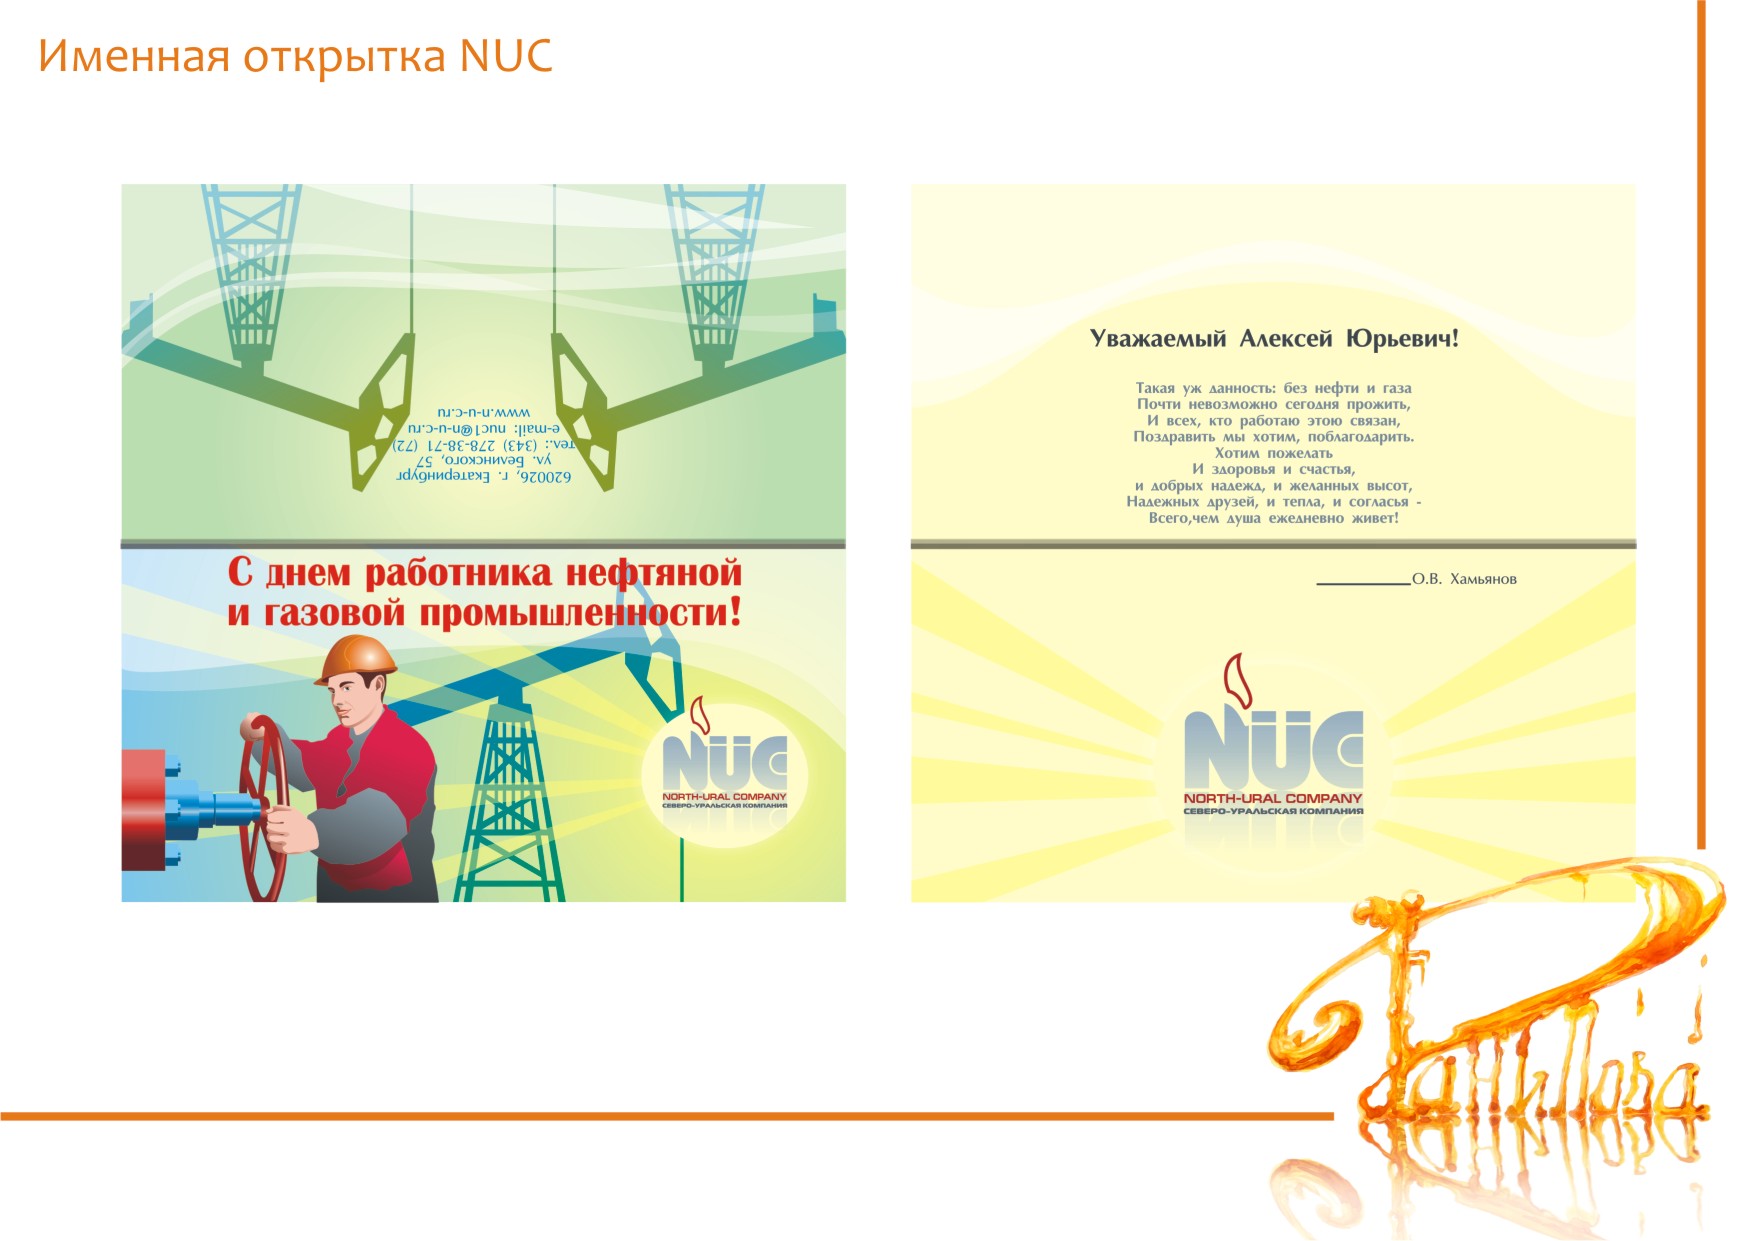 Именная открытка NUC